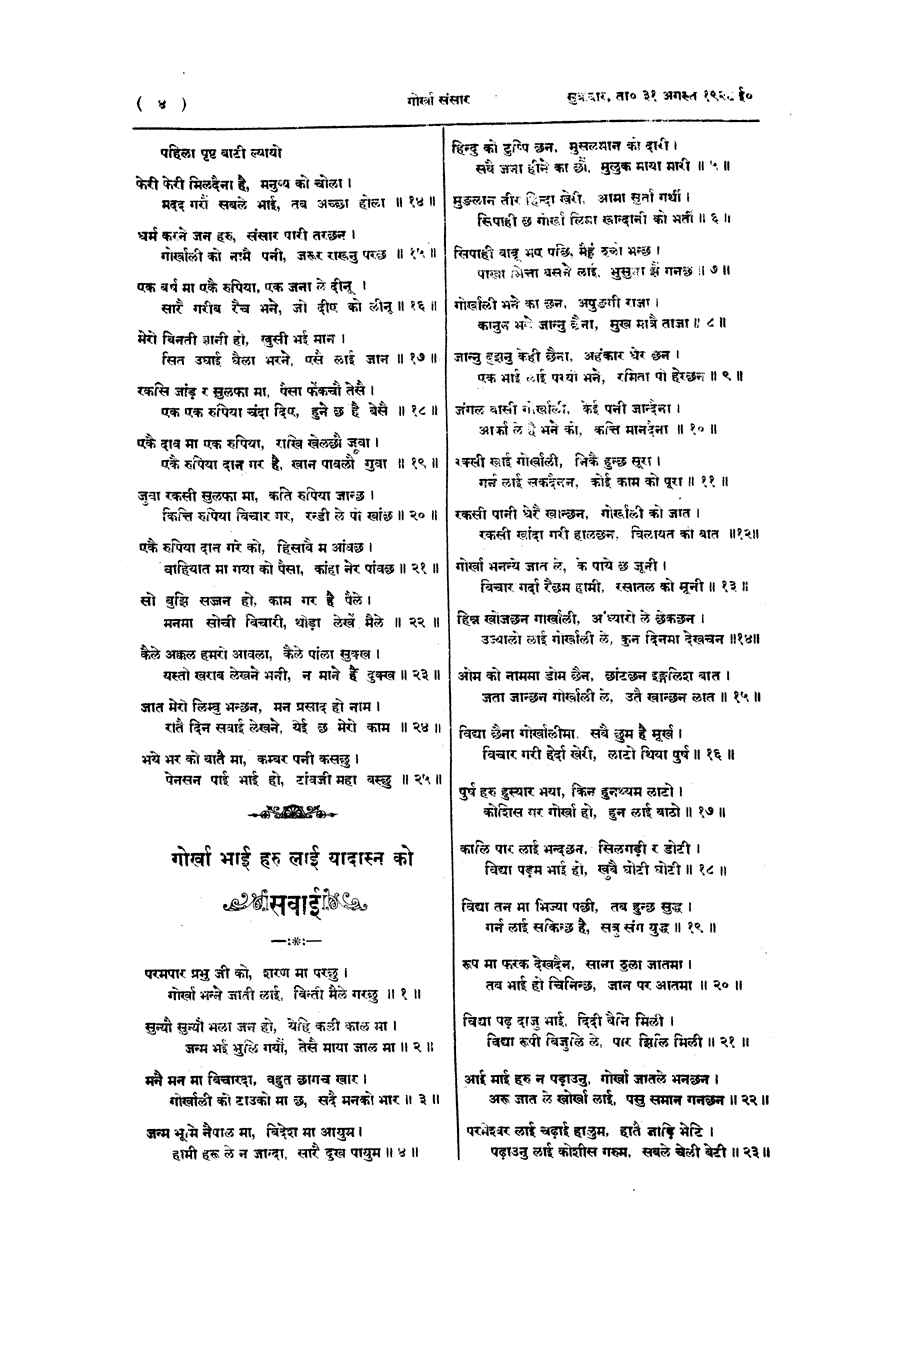 Gorkha Sansar, 31 Aug 1928, page 4